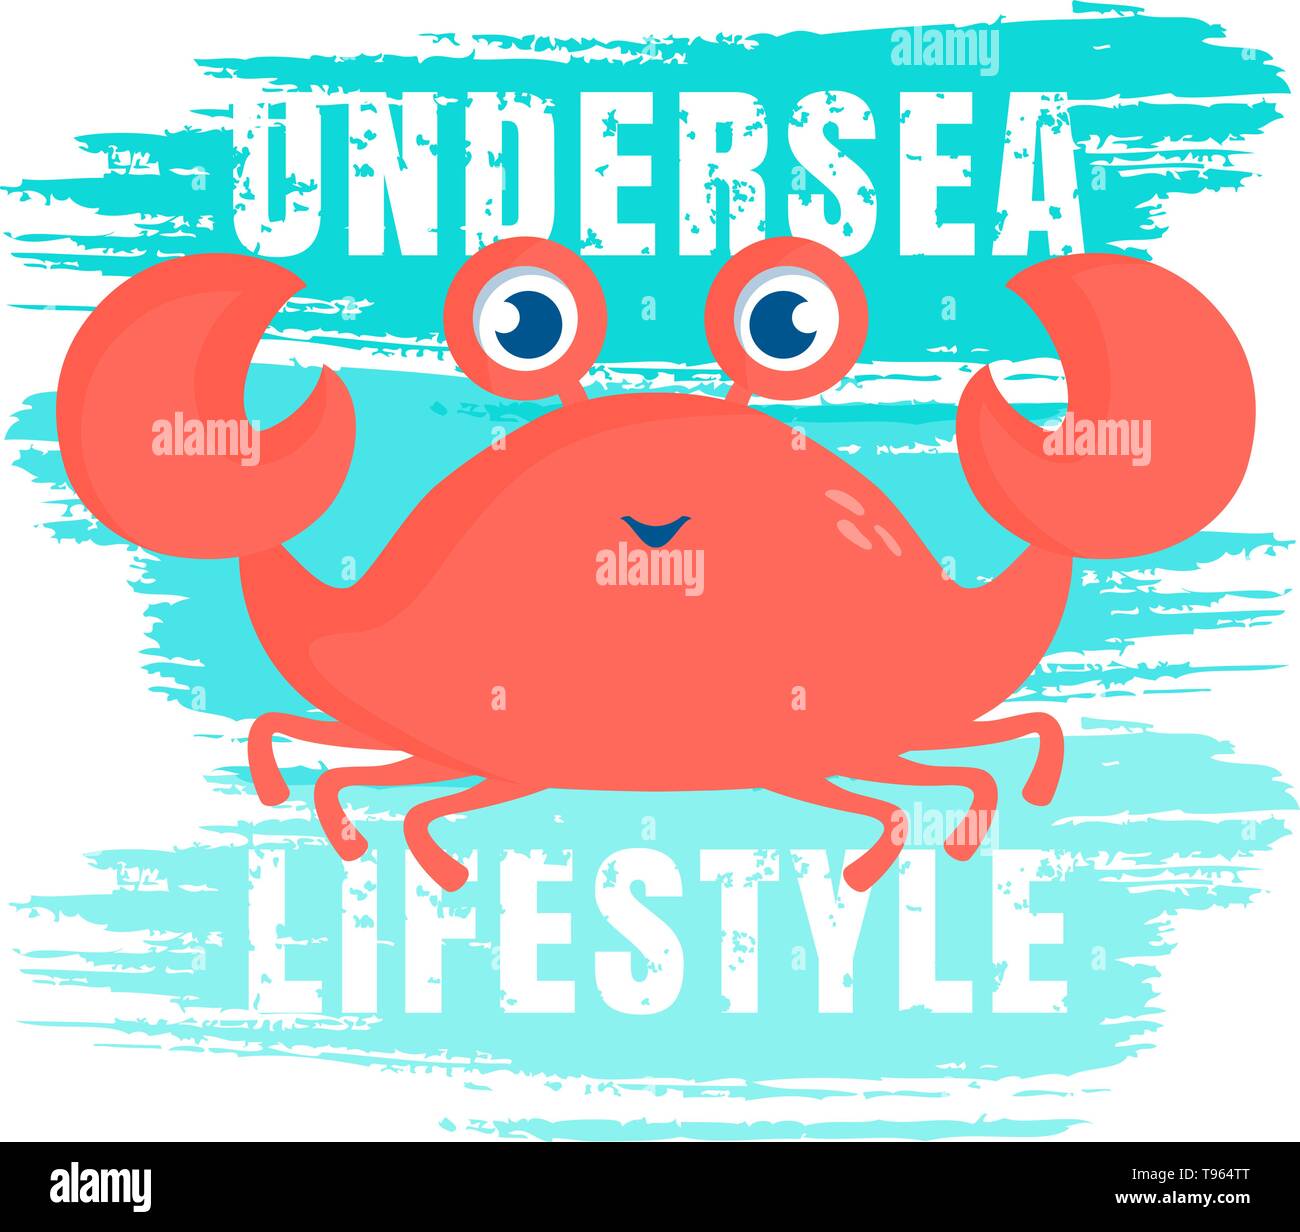 Vektor-Illustration mit niedlichen Krabben, Pinsel Pinselstriche und Phrase - Undersea Lifestyle. Stilvolles Design für Banner, Poster, T-Shirt-Print. Stock Vektor